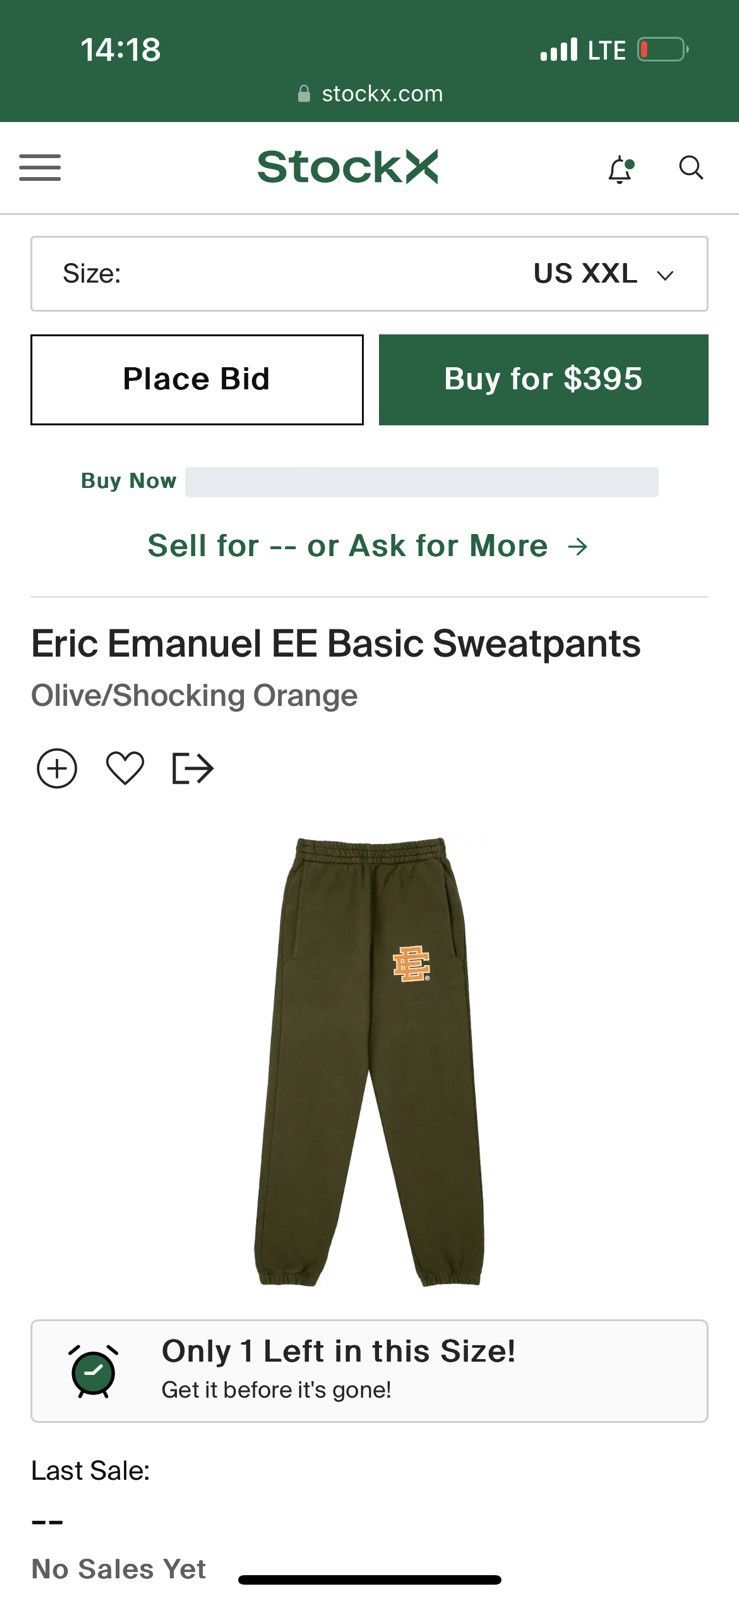 Eric Emanuel EE Basic Sweatpants Olive/Shocking Orange